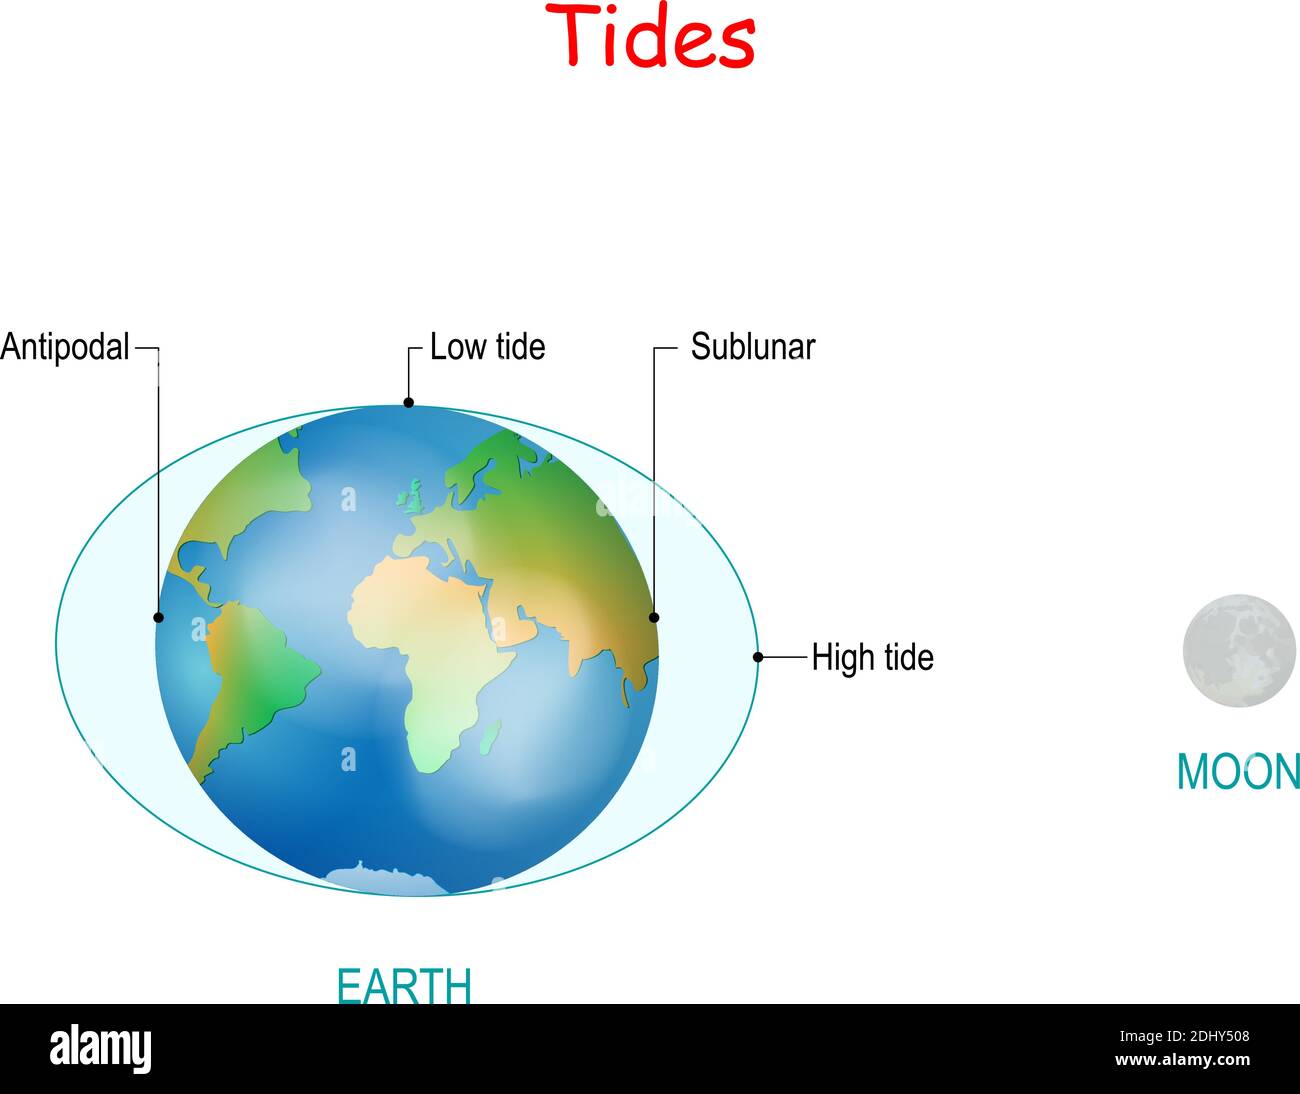 Las mareas dependen de donde el sol y la luna están en relación con la  Tierra. La gravedad y la inercia crean abultamientos de marea en lados  opuestos del planeta. Alto y